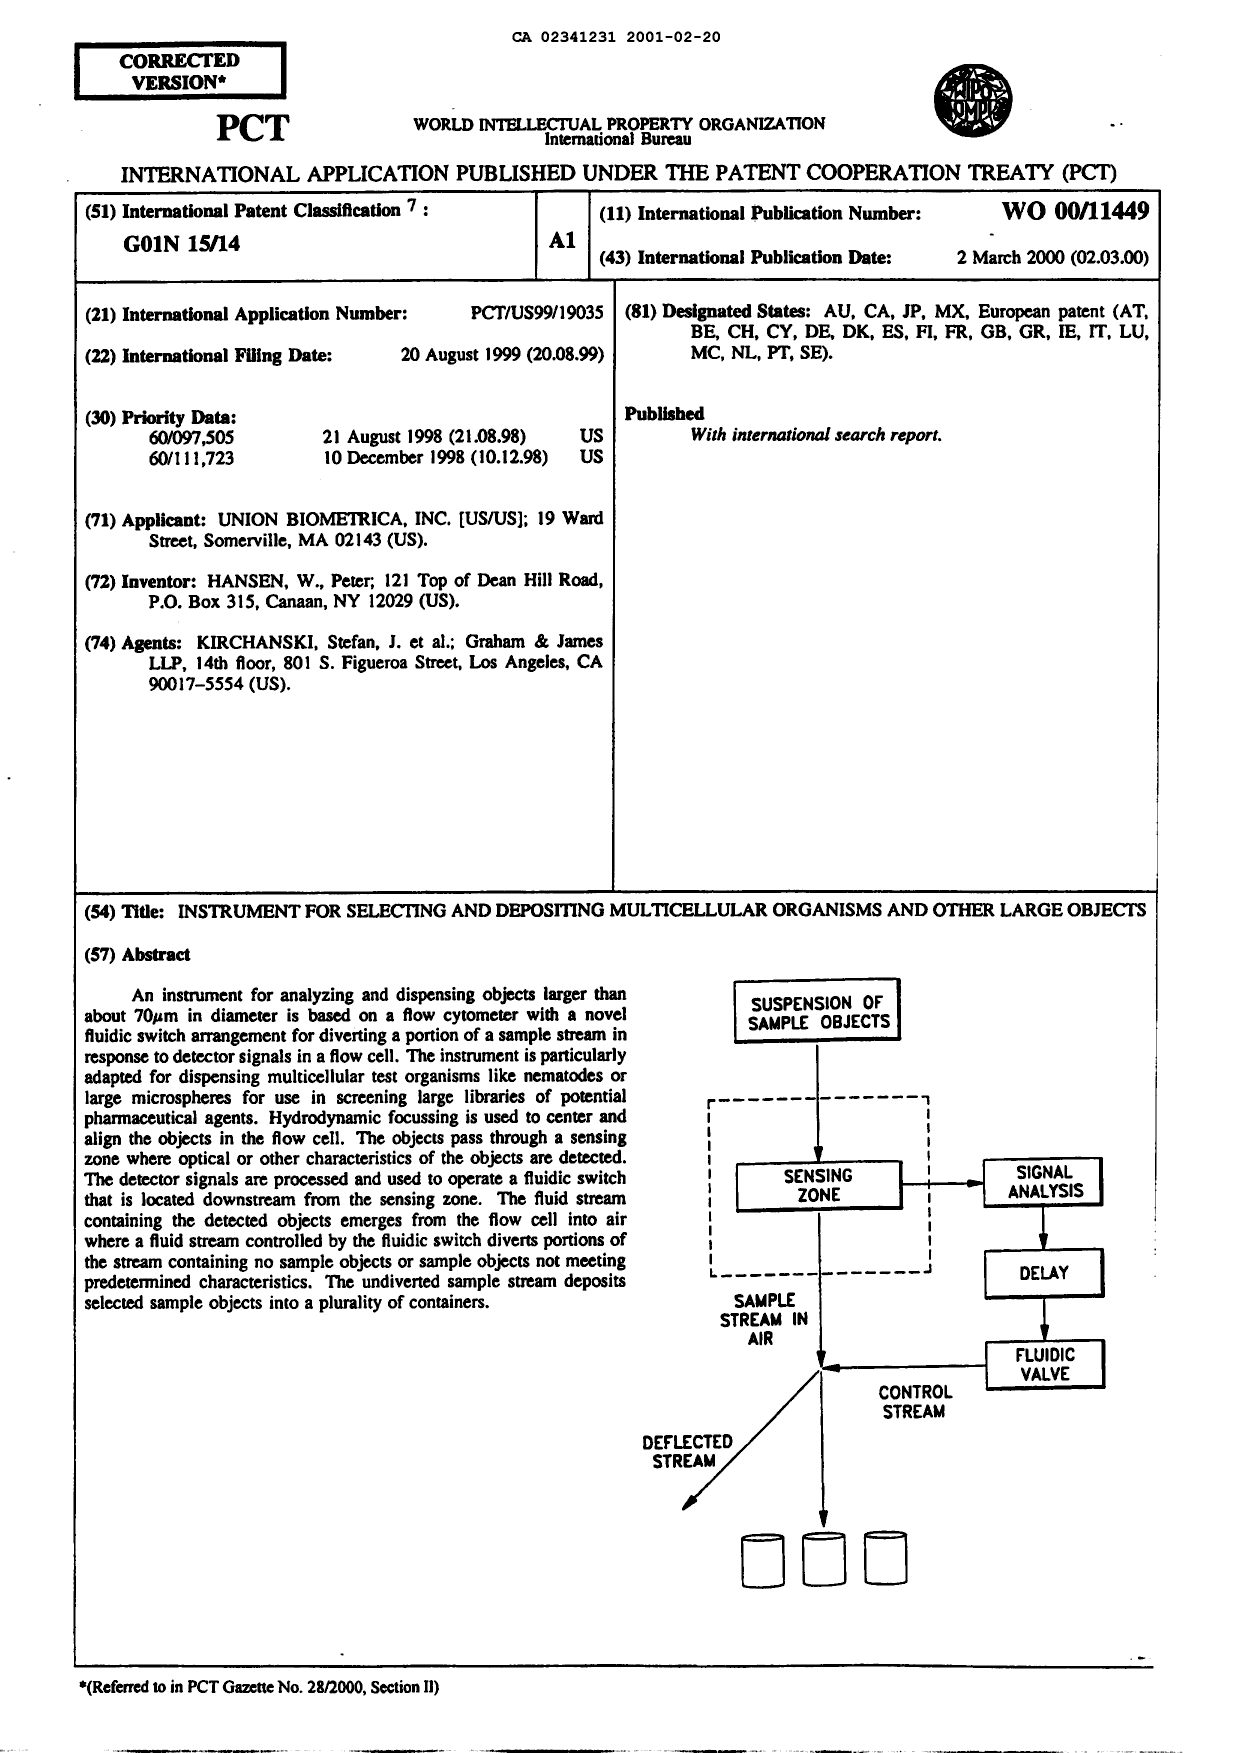 Document de brevet canadien 2341231. Abrégé 20010220. Image 1 de 1